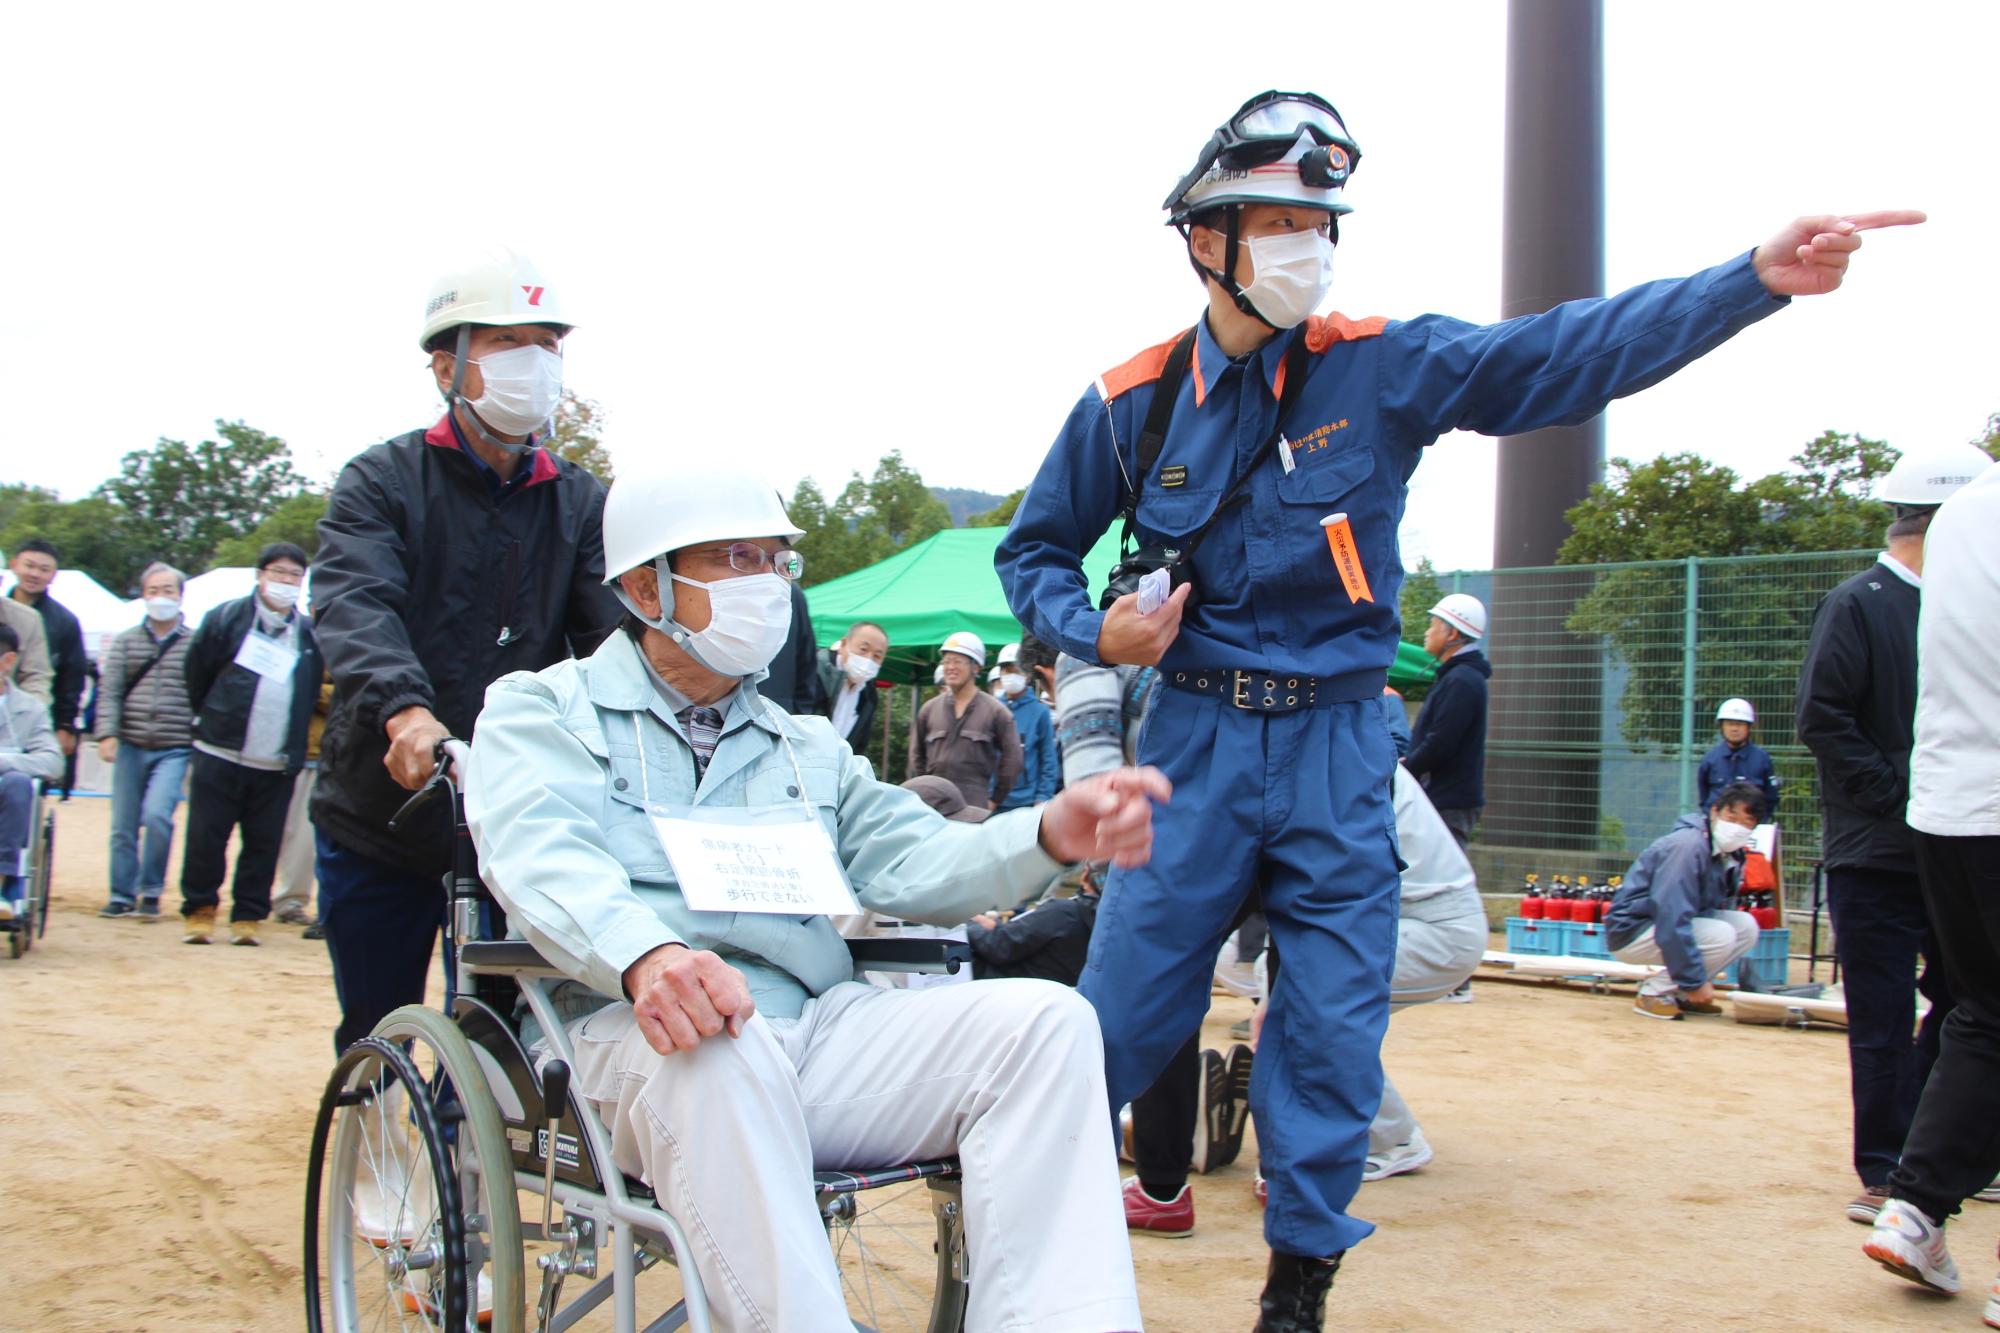 応急救護訓練で足を負傷した被災者役の男性を誘導している写真